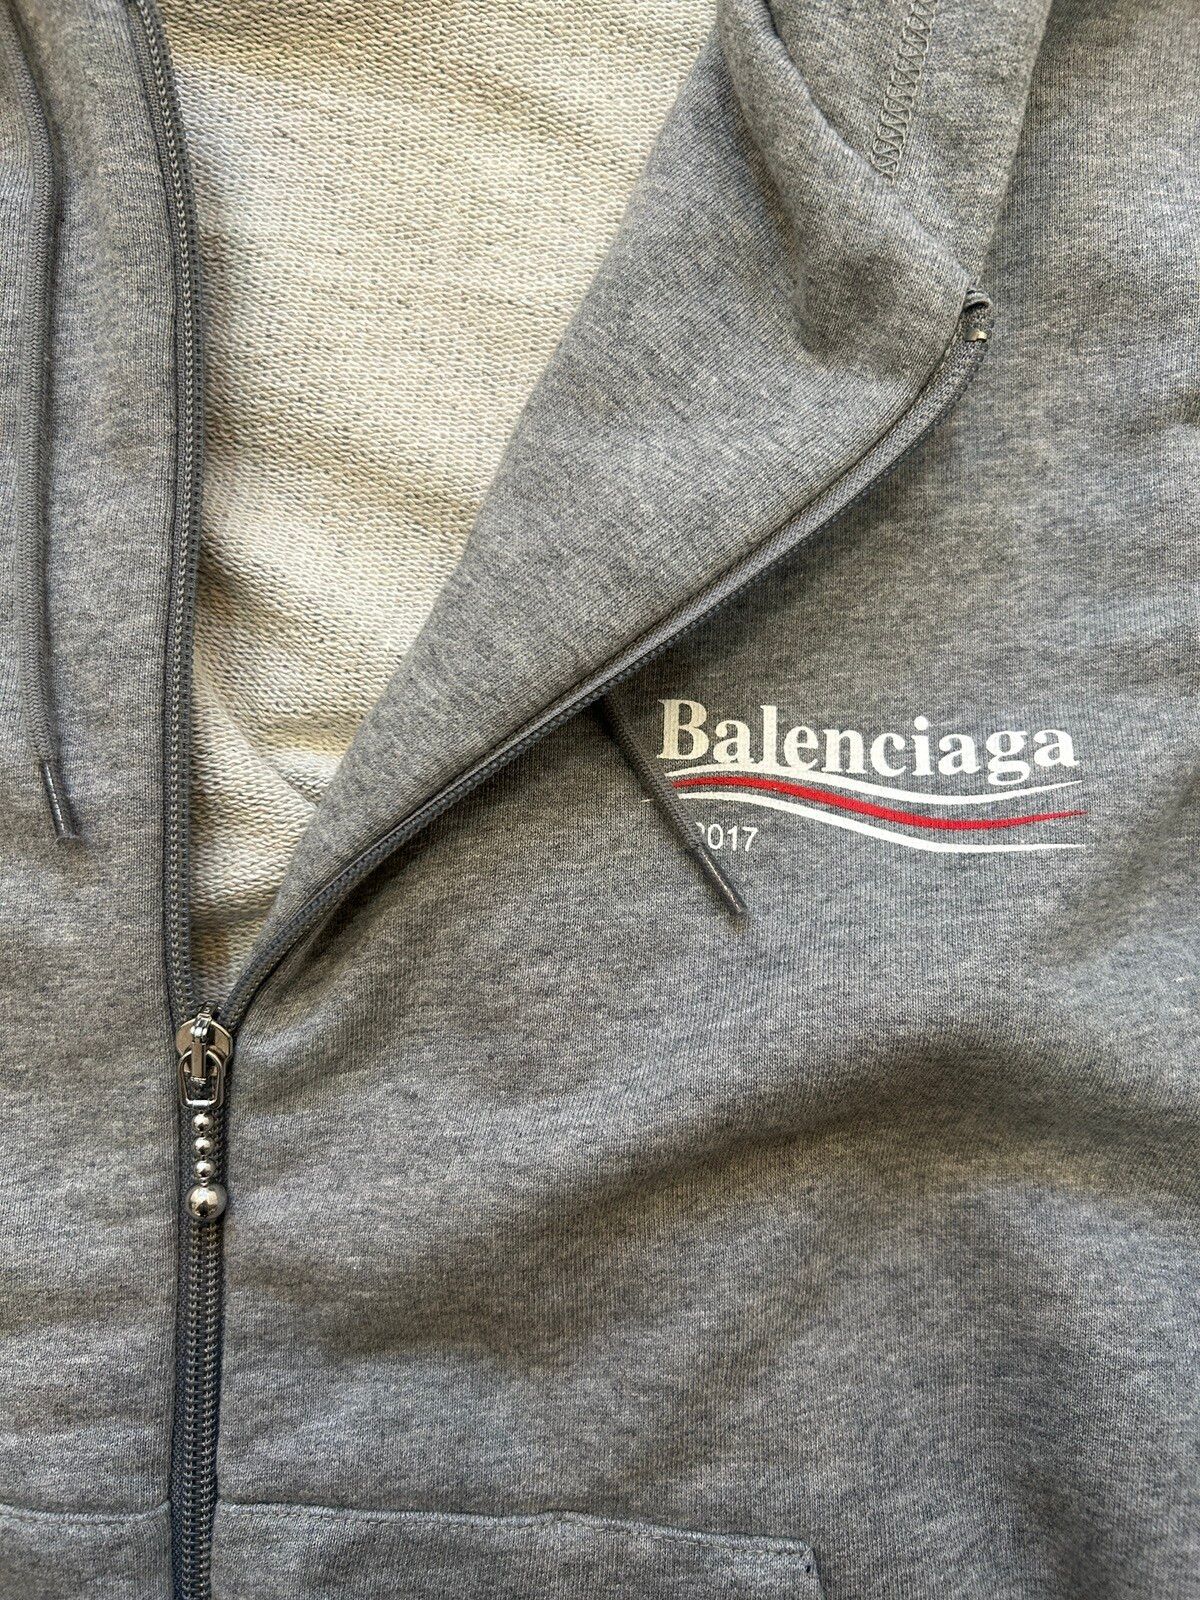 Balenciaga BALENCIAGA CAMPAIGN 2017 ZIP UP Size US L / EU 52-54 / 3 - 3 Thumbnail